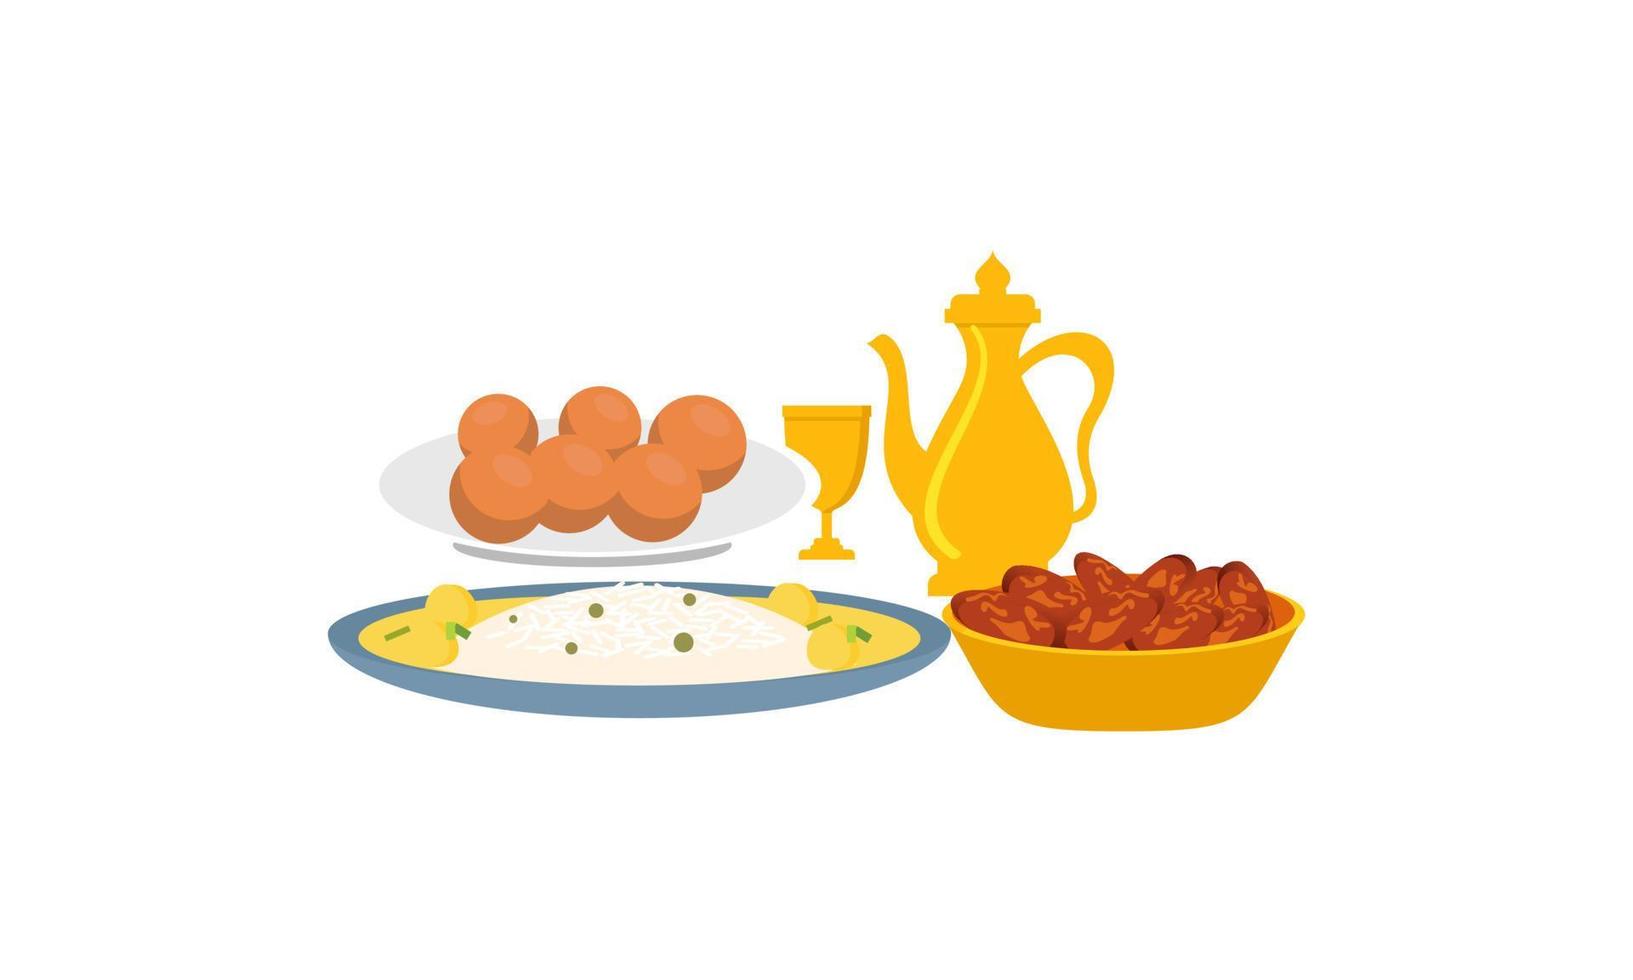 traditionelle gerichte verschiedener küchen logo vektor